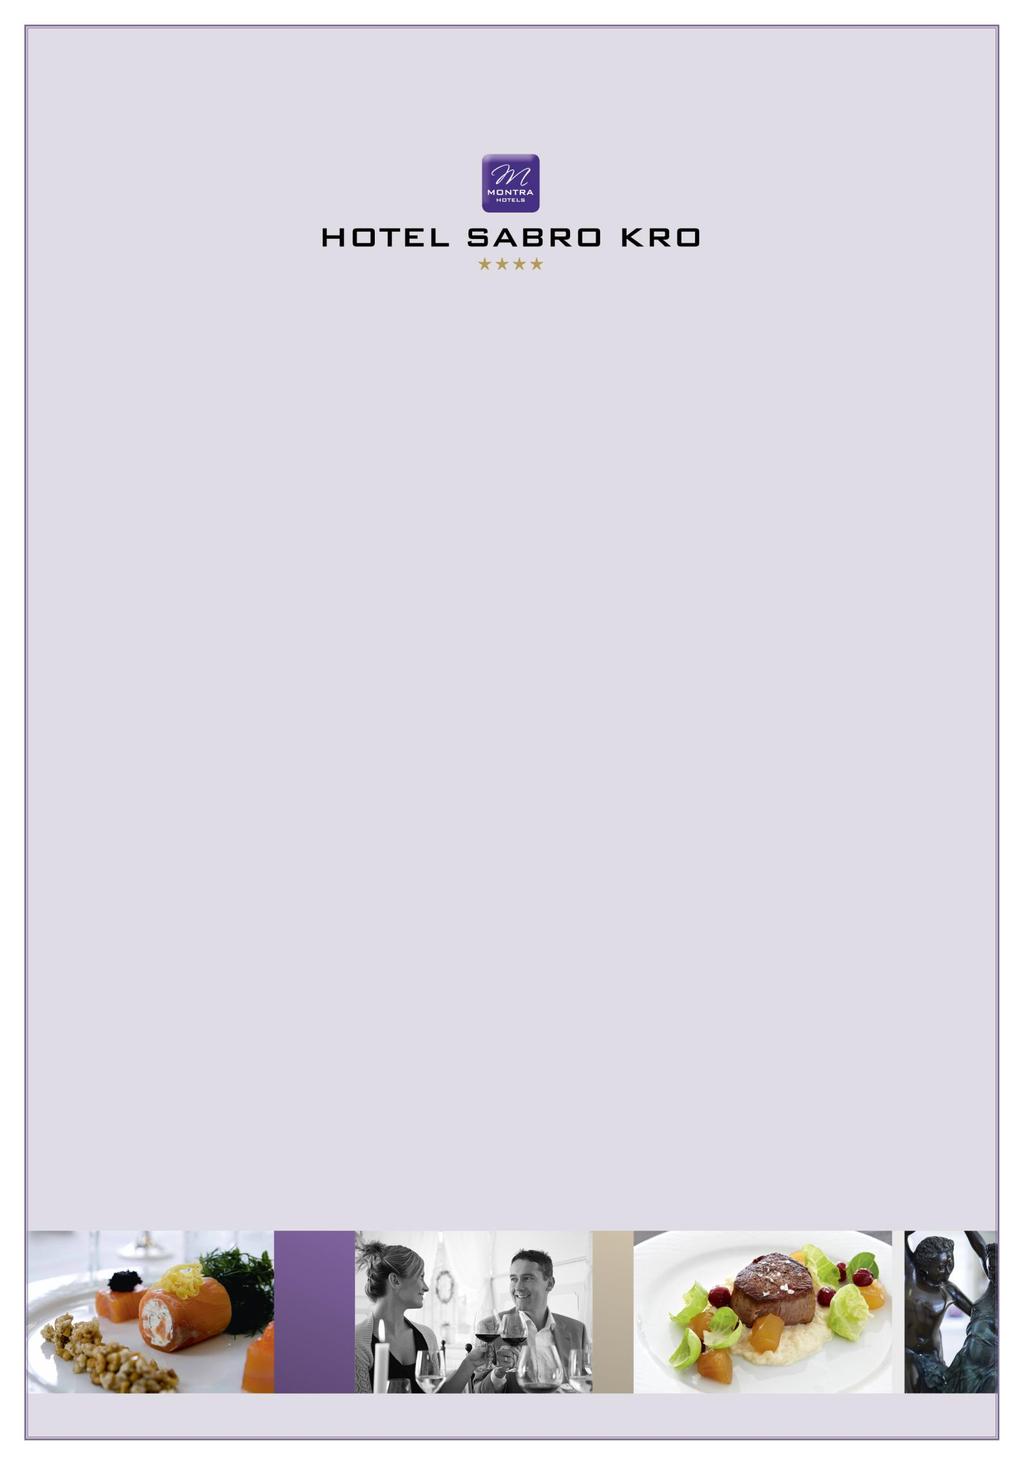 Menukort Kære gæst Det glæder os at byde Dem velkommen her på Montra Hotel Sabro Kro.